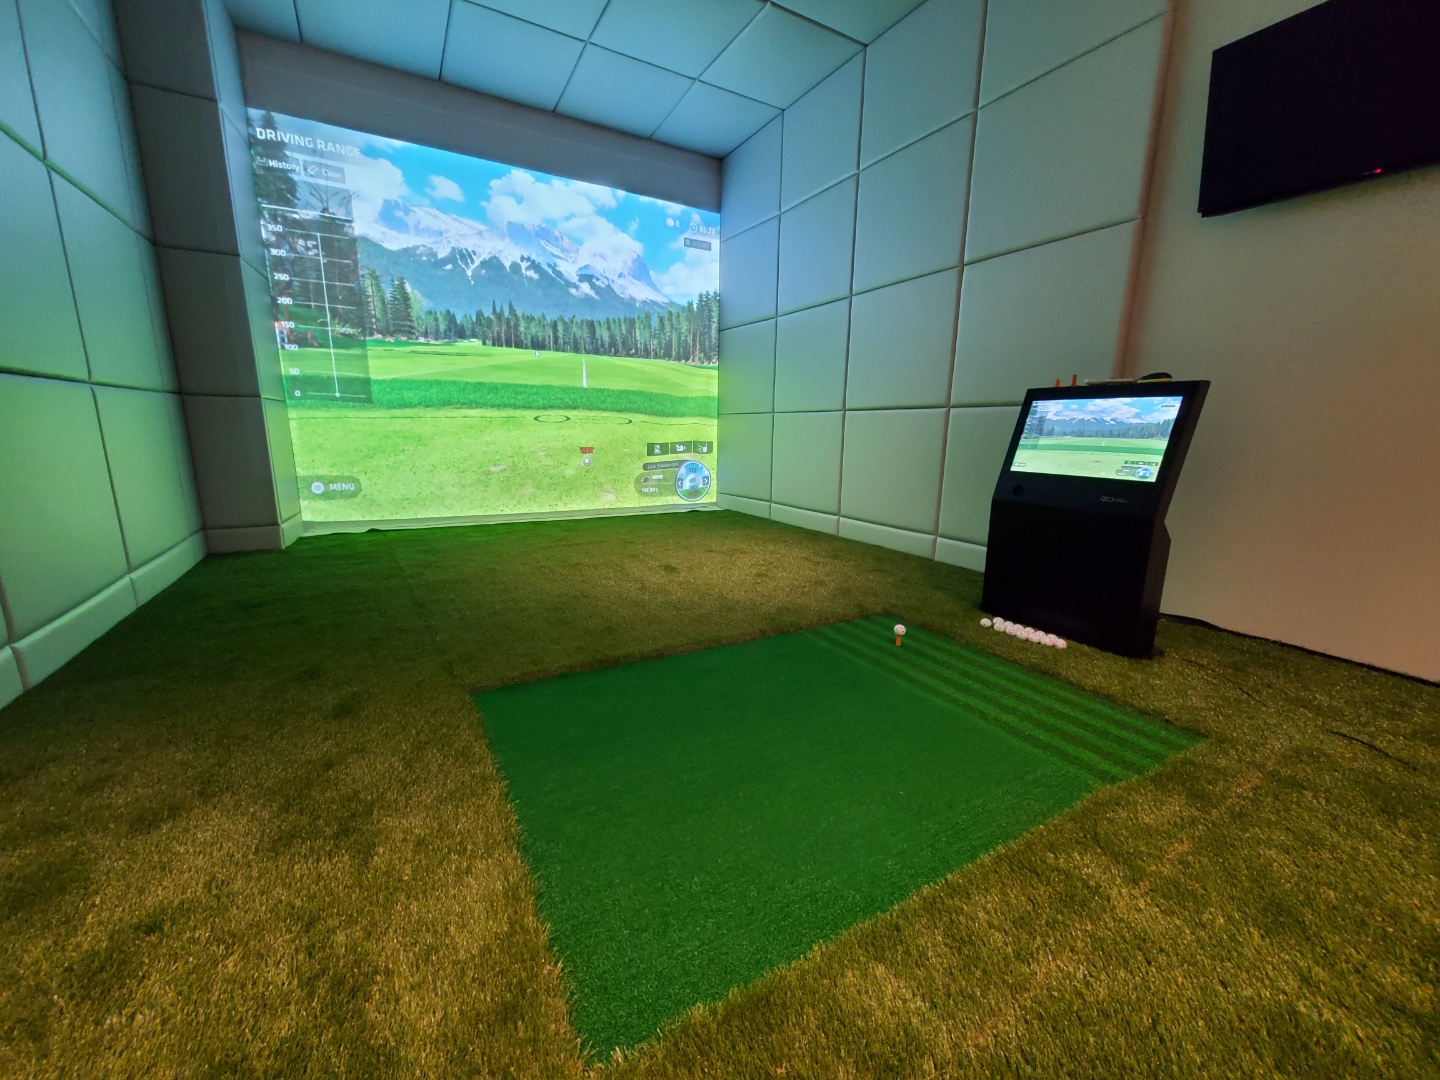 港区に新しくオープンするPrivate Golf Studio “1st” 品川港南店様に『QED弾道解析型シミュレーター』を設置致しました。